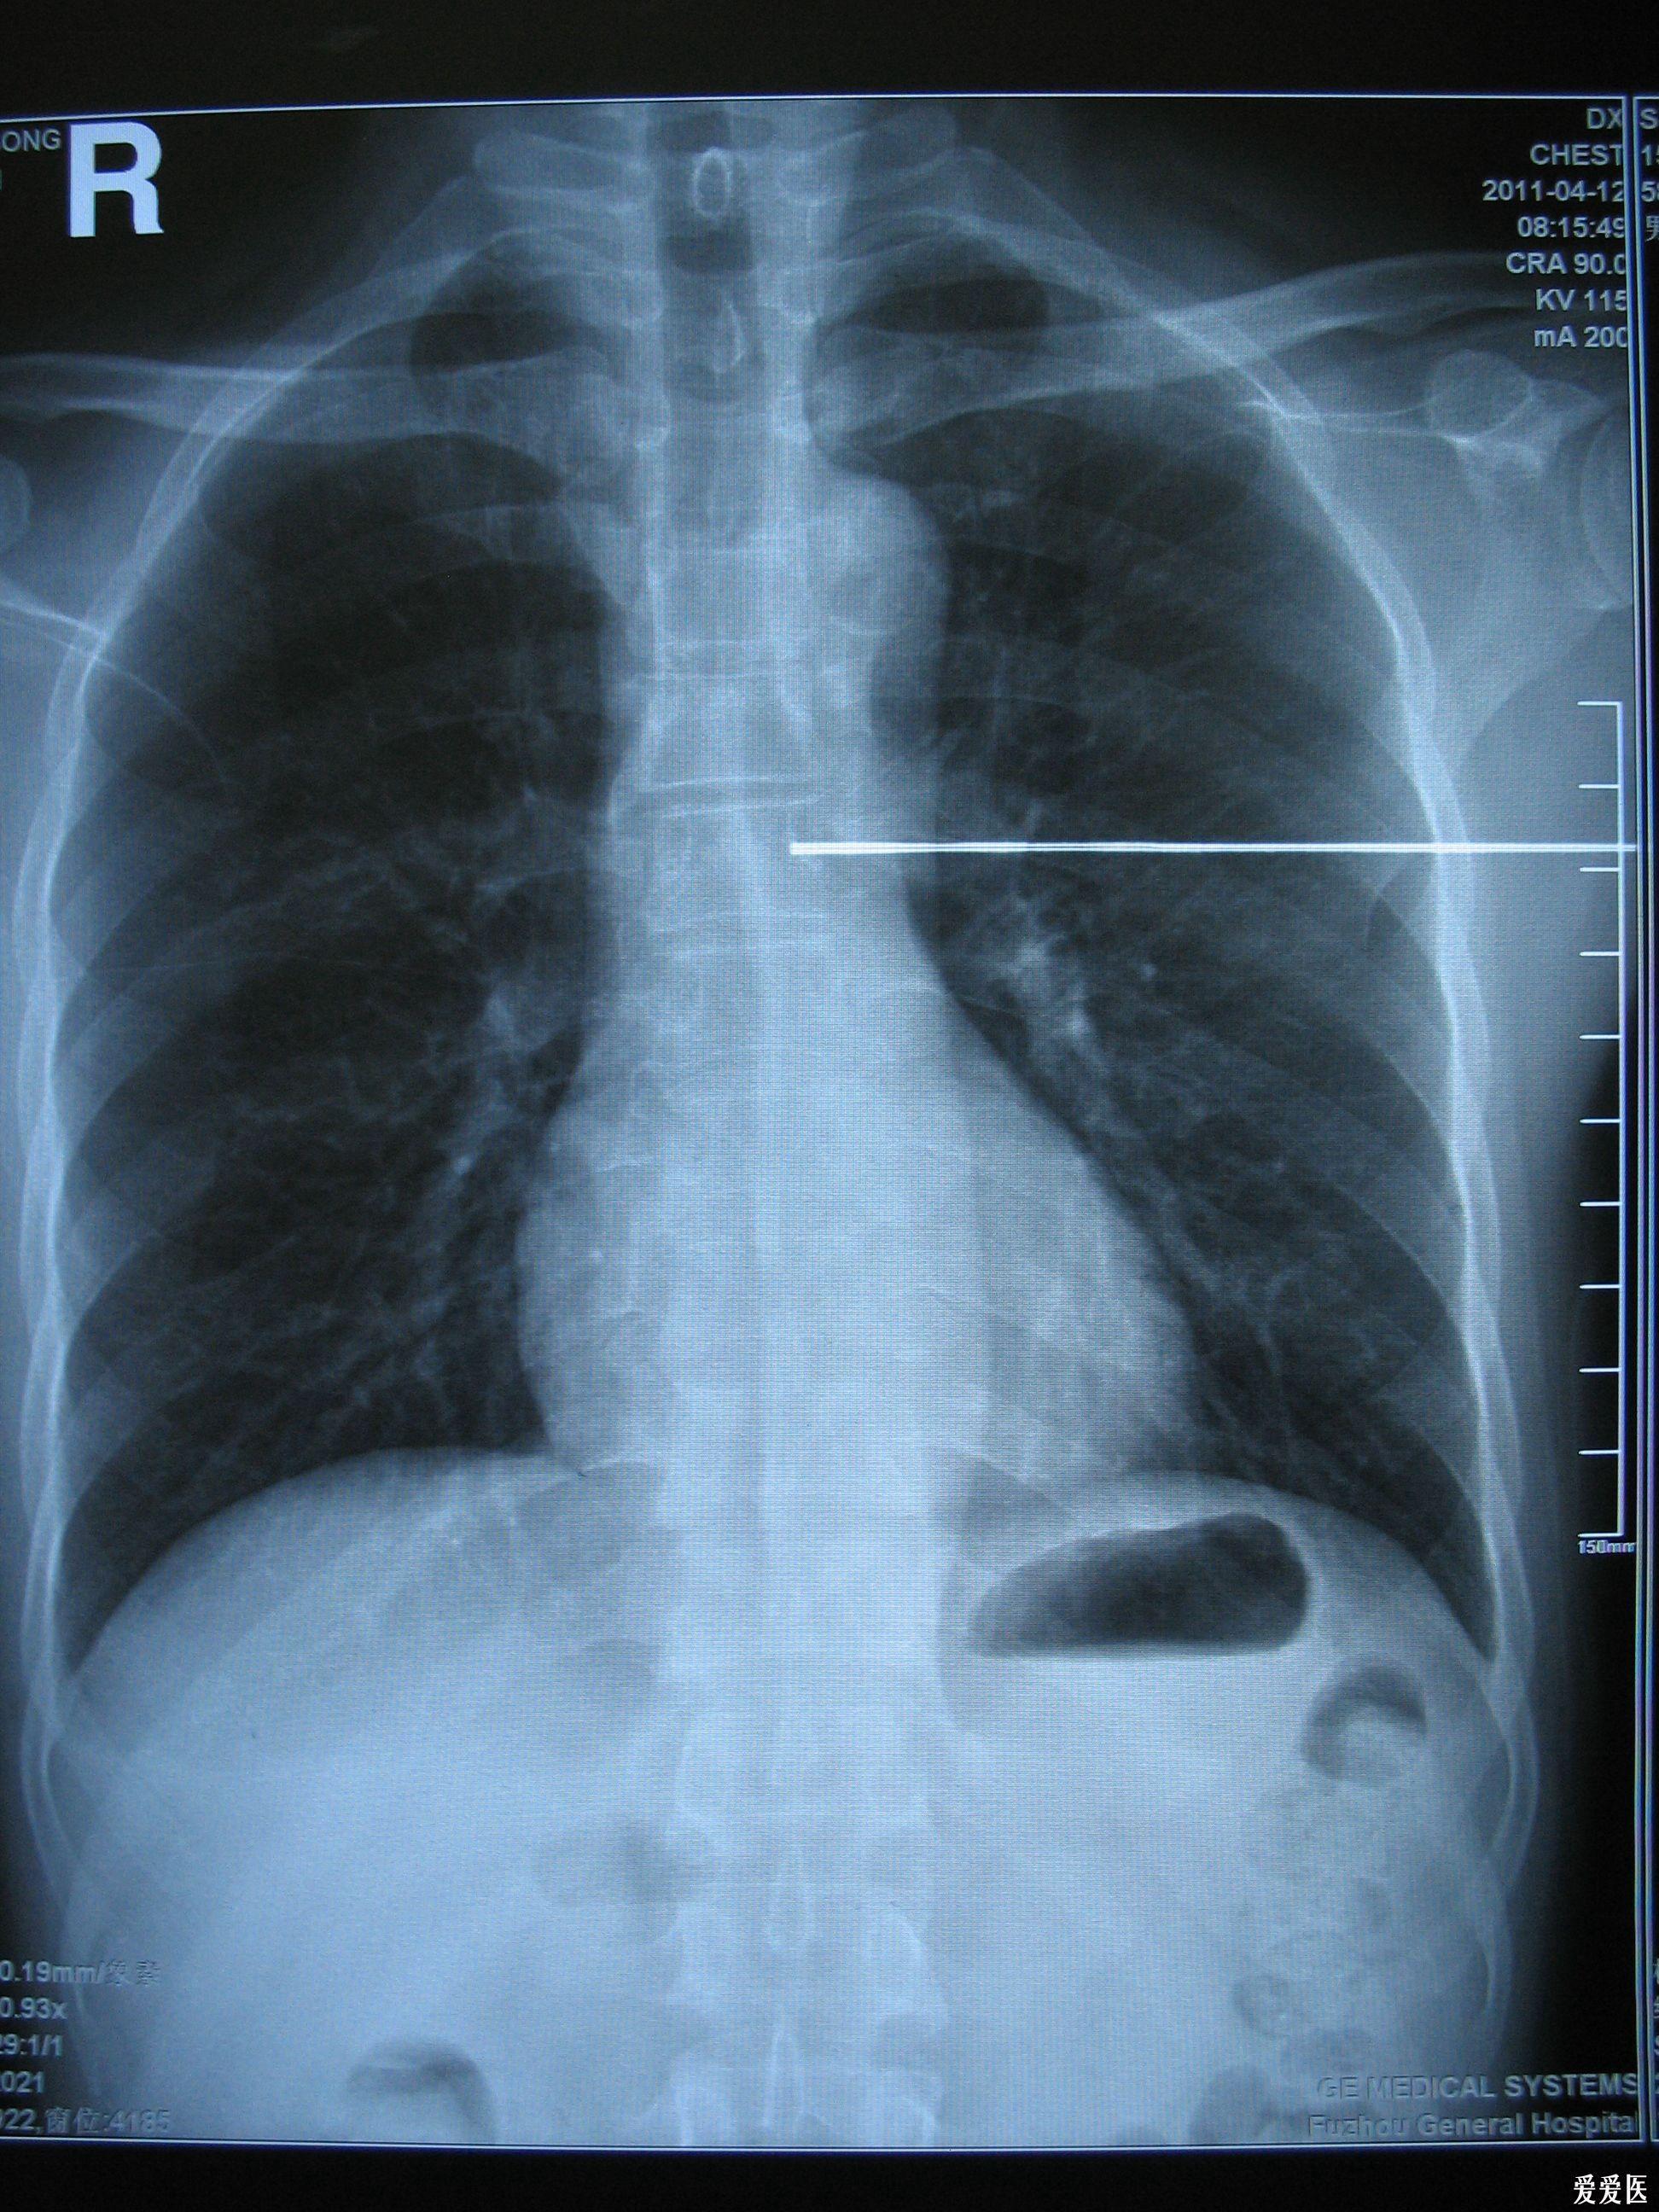 胸部x射线 ct增强片 看看能确诊吗?